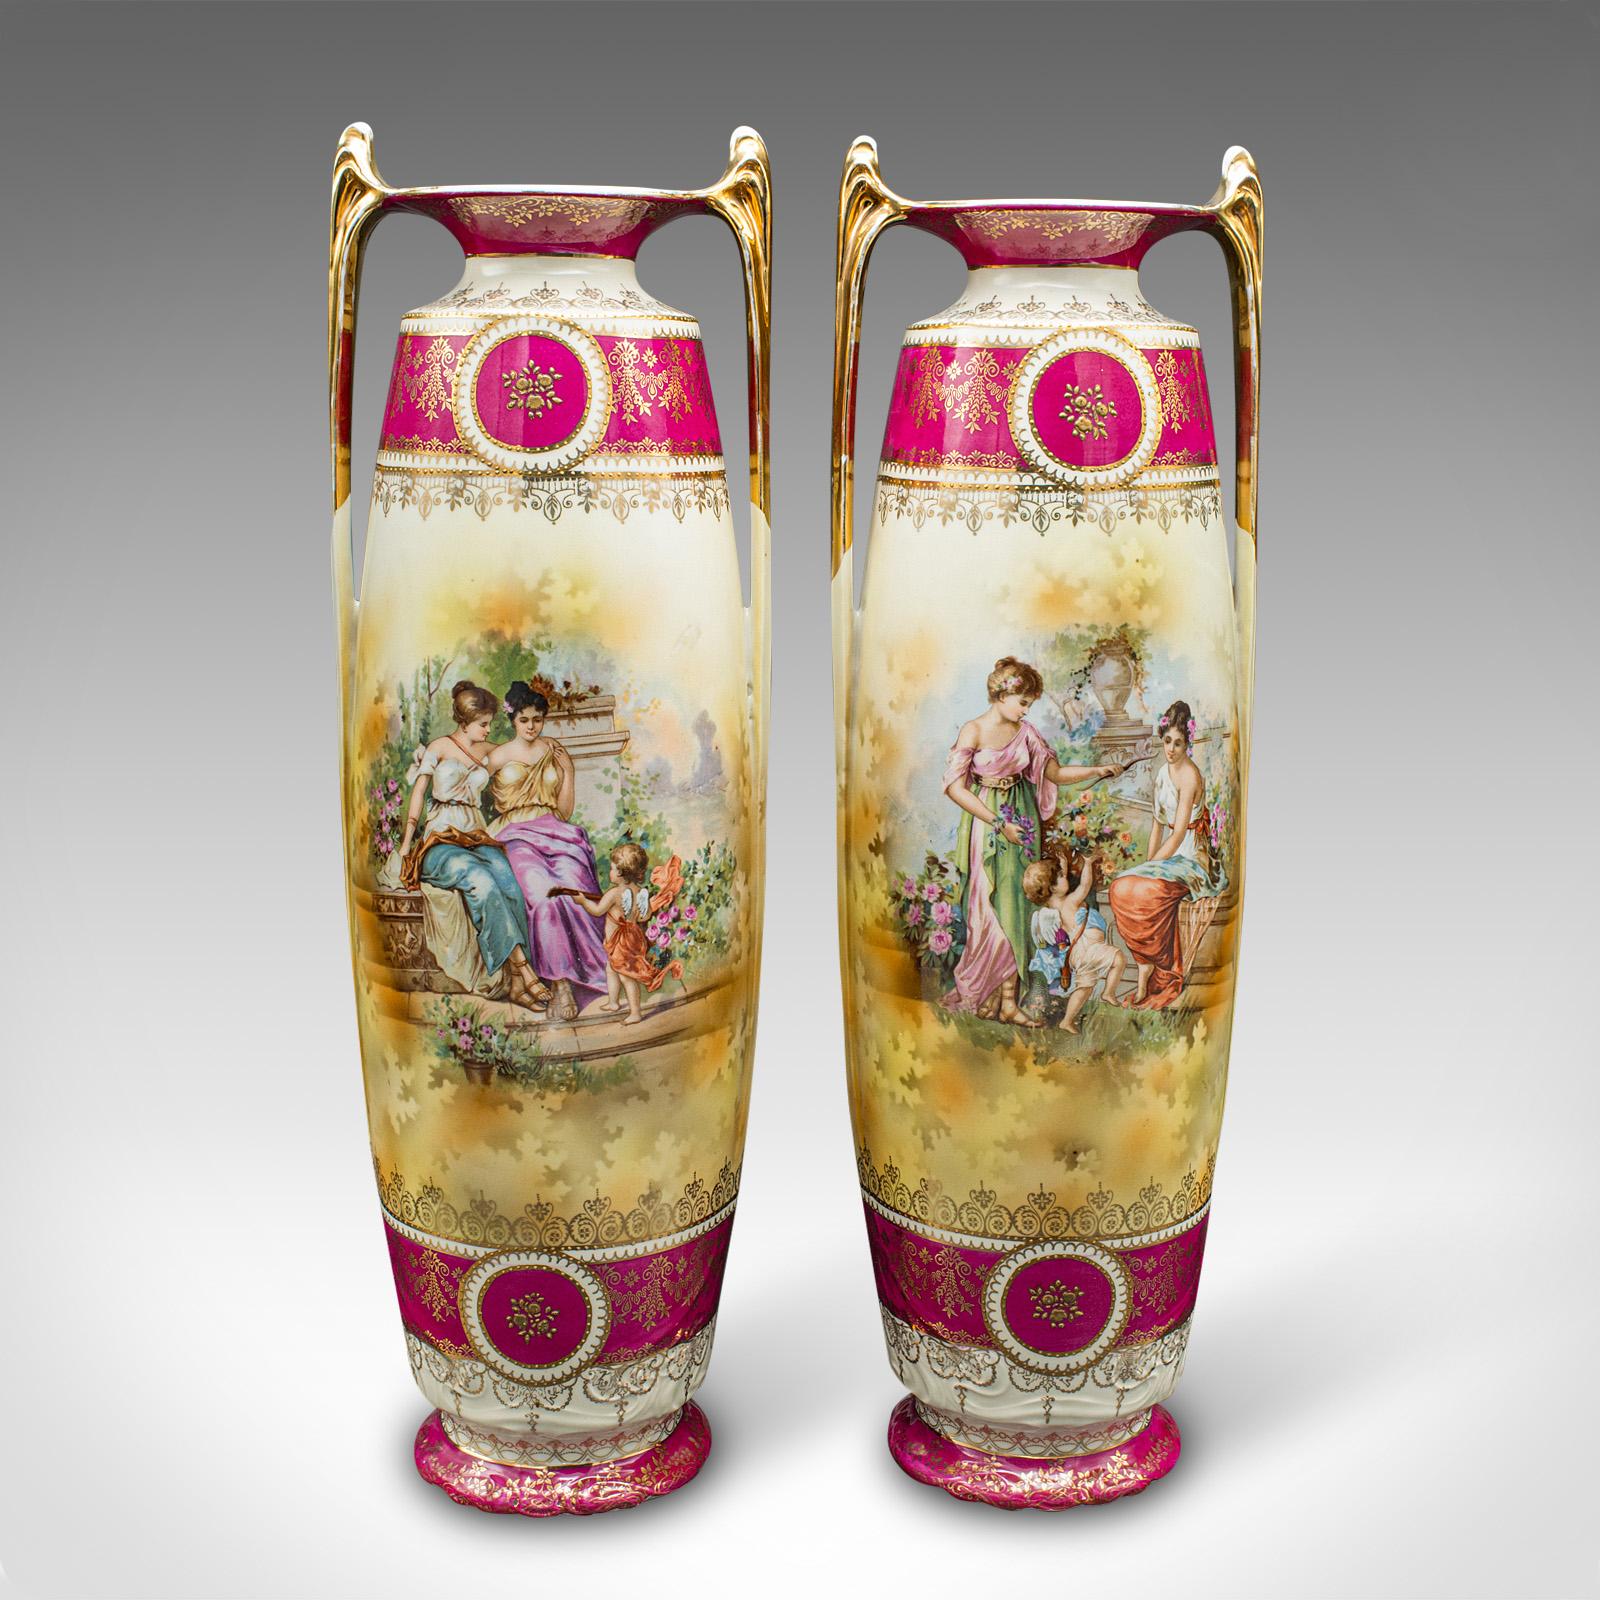 Dies ist ein Paar hoher antiker Stielvasen. Eine österreichische Blumenhülse aus Keramik aus der frühviktorianischen Zeit, um 1850.

Wunderschön dekorierte Vasen mit prächtigen Farben und figuralen Szenen
Mit wünschenswerter Alterspatina und in